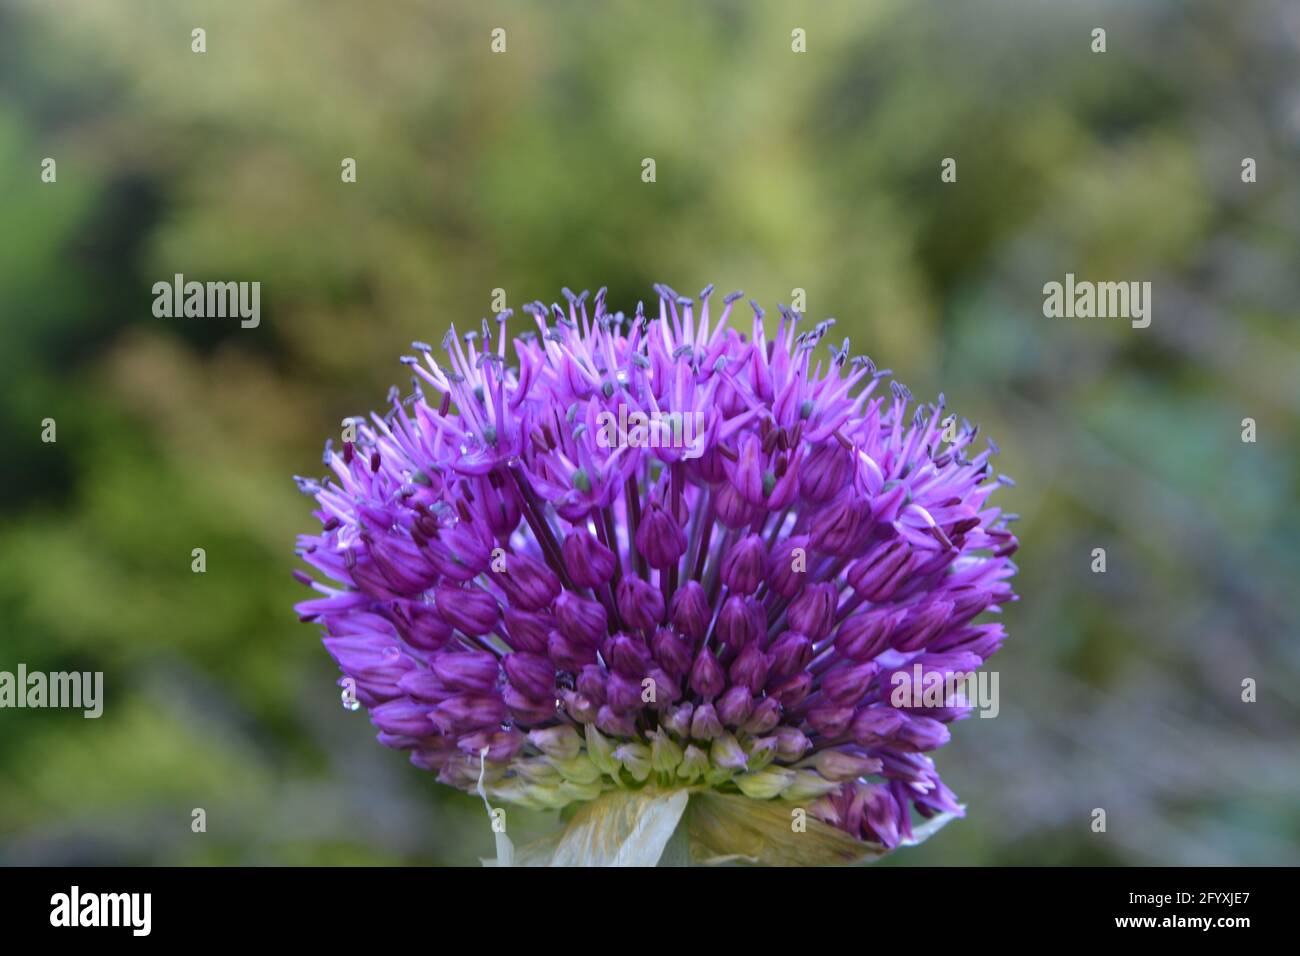 Allium giganteum 'Gladiator', Regno Unito, spazio floreale bello e tranquillo Foto Stock